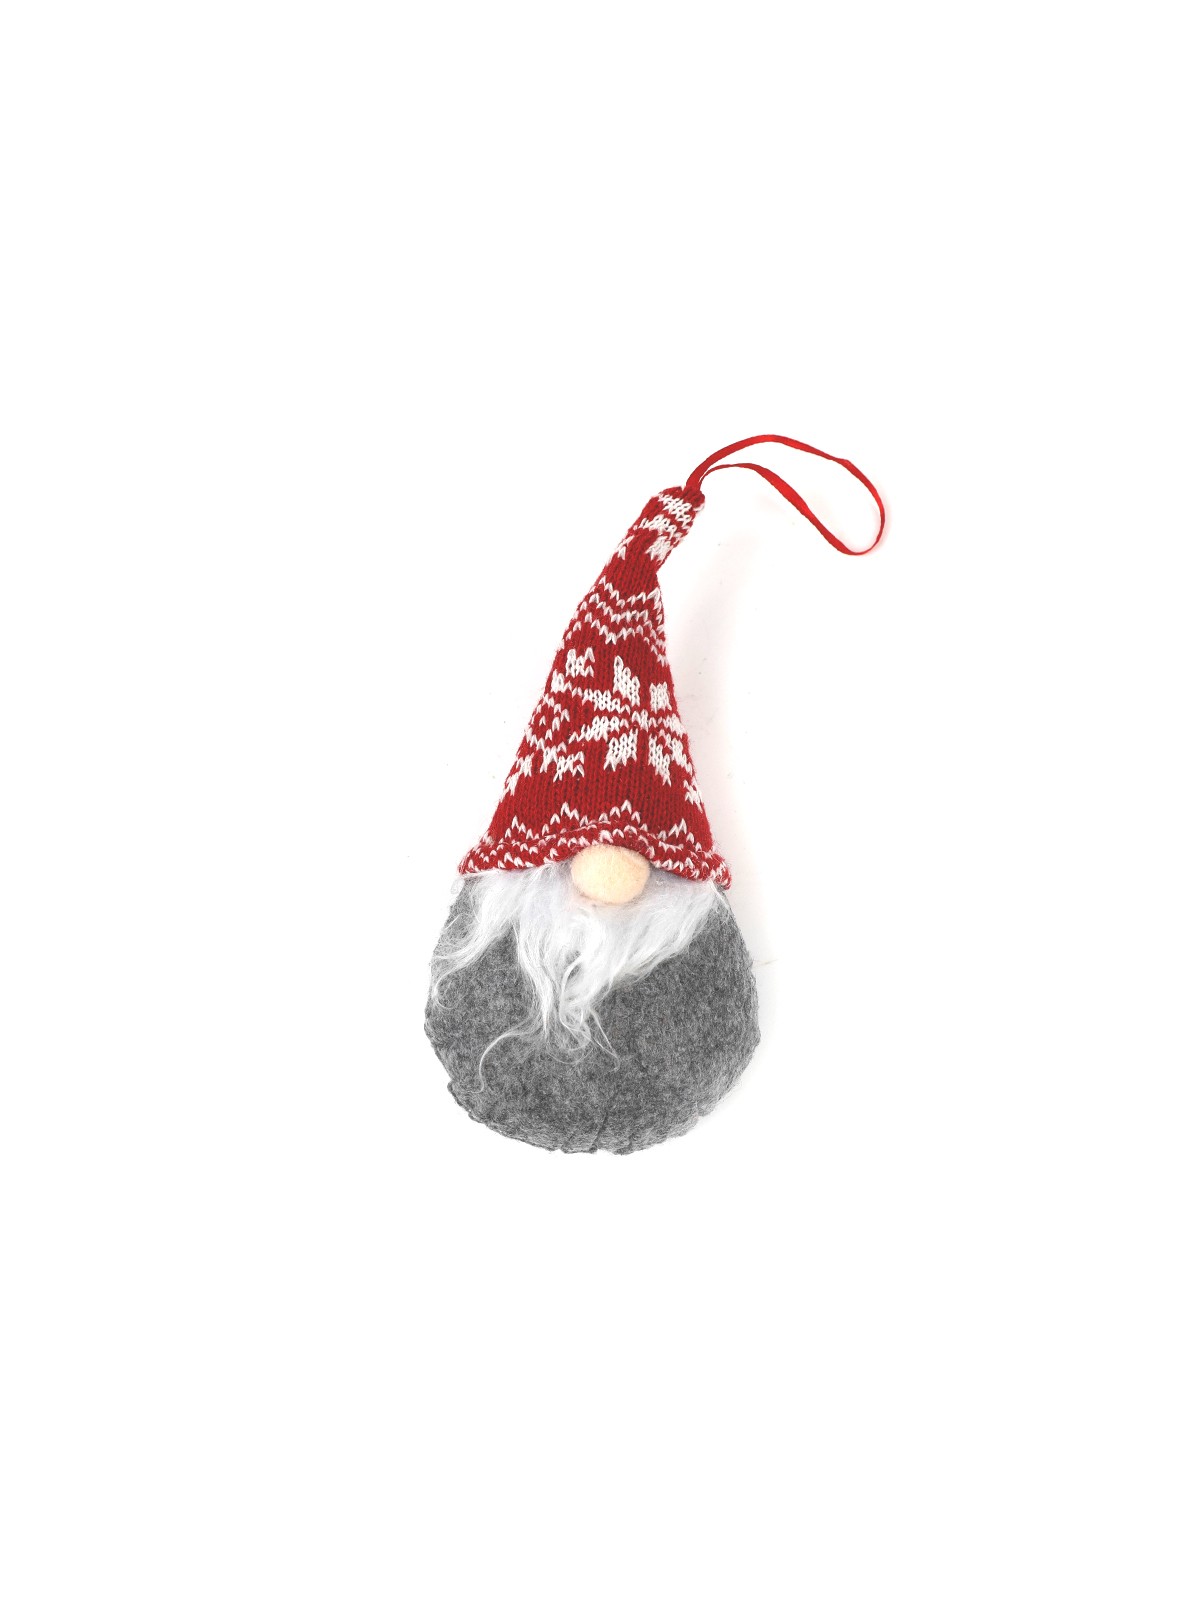 Сувенир новогодний "Гном в шапке", 20*6*9 см, микс дизайна